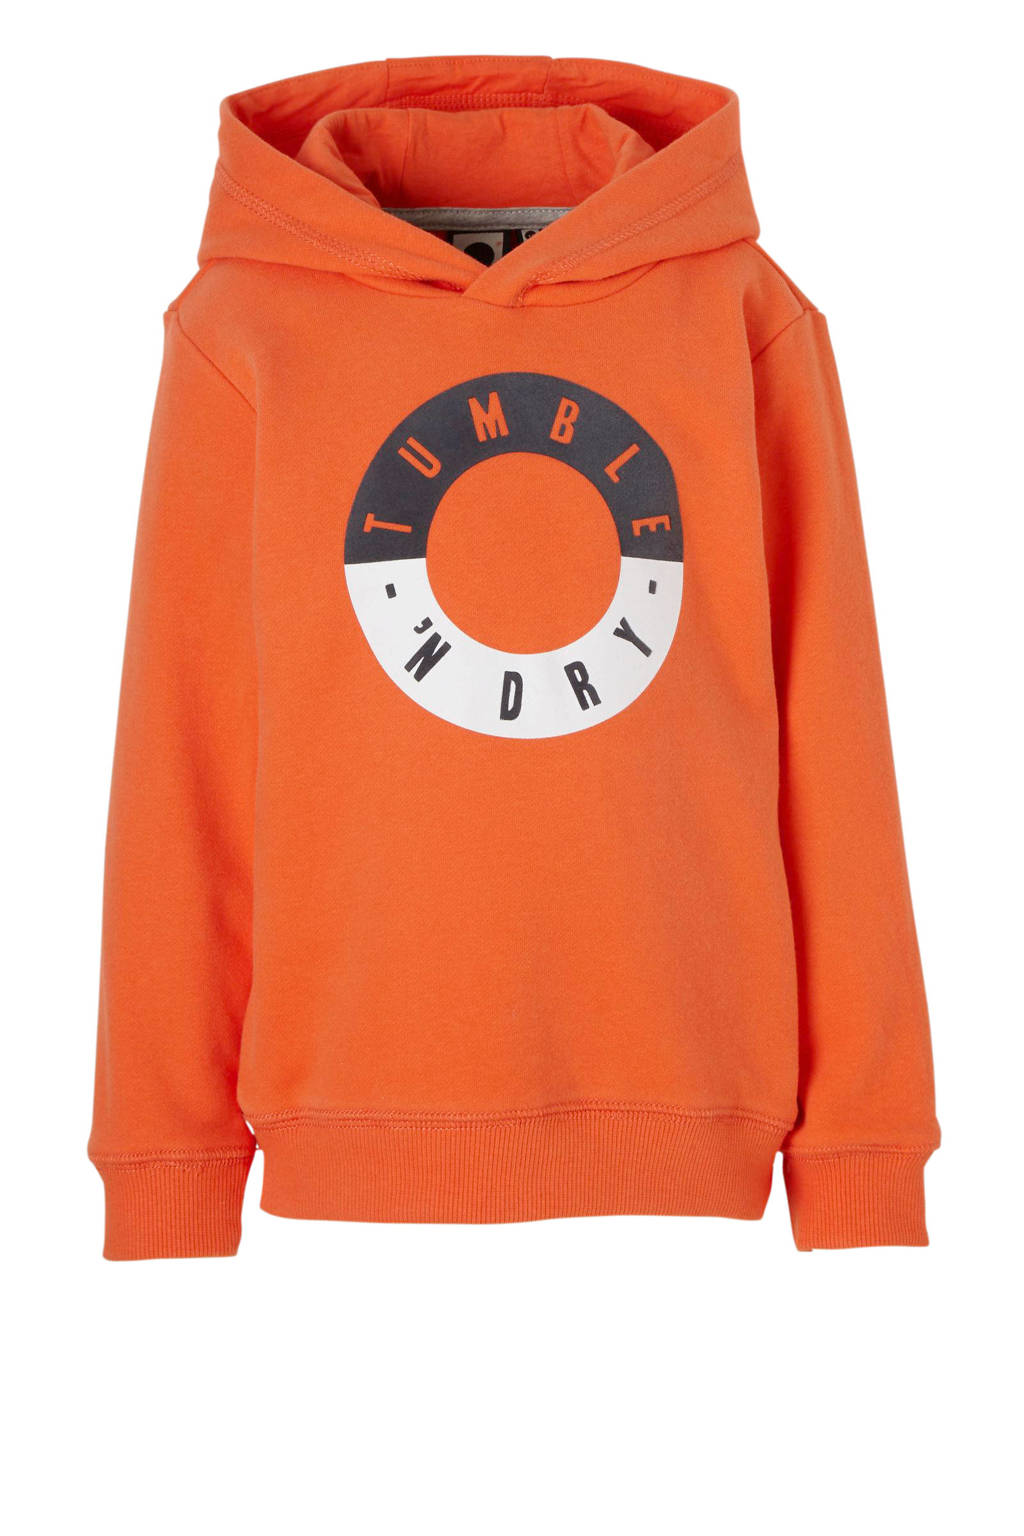 heden Bloeden Muf Tumble 'n Dry Mid hoodie Fabrice met logo oranje | wehkamp